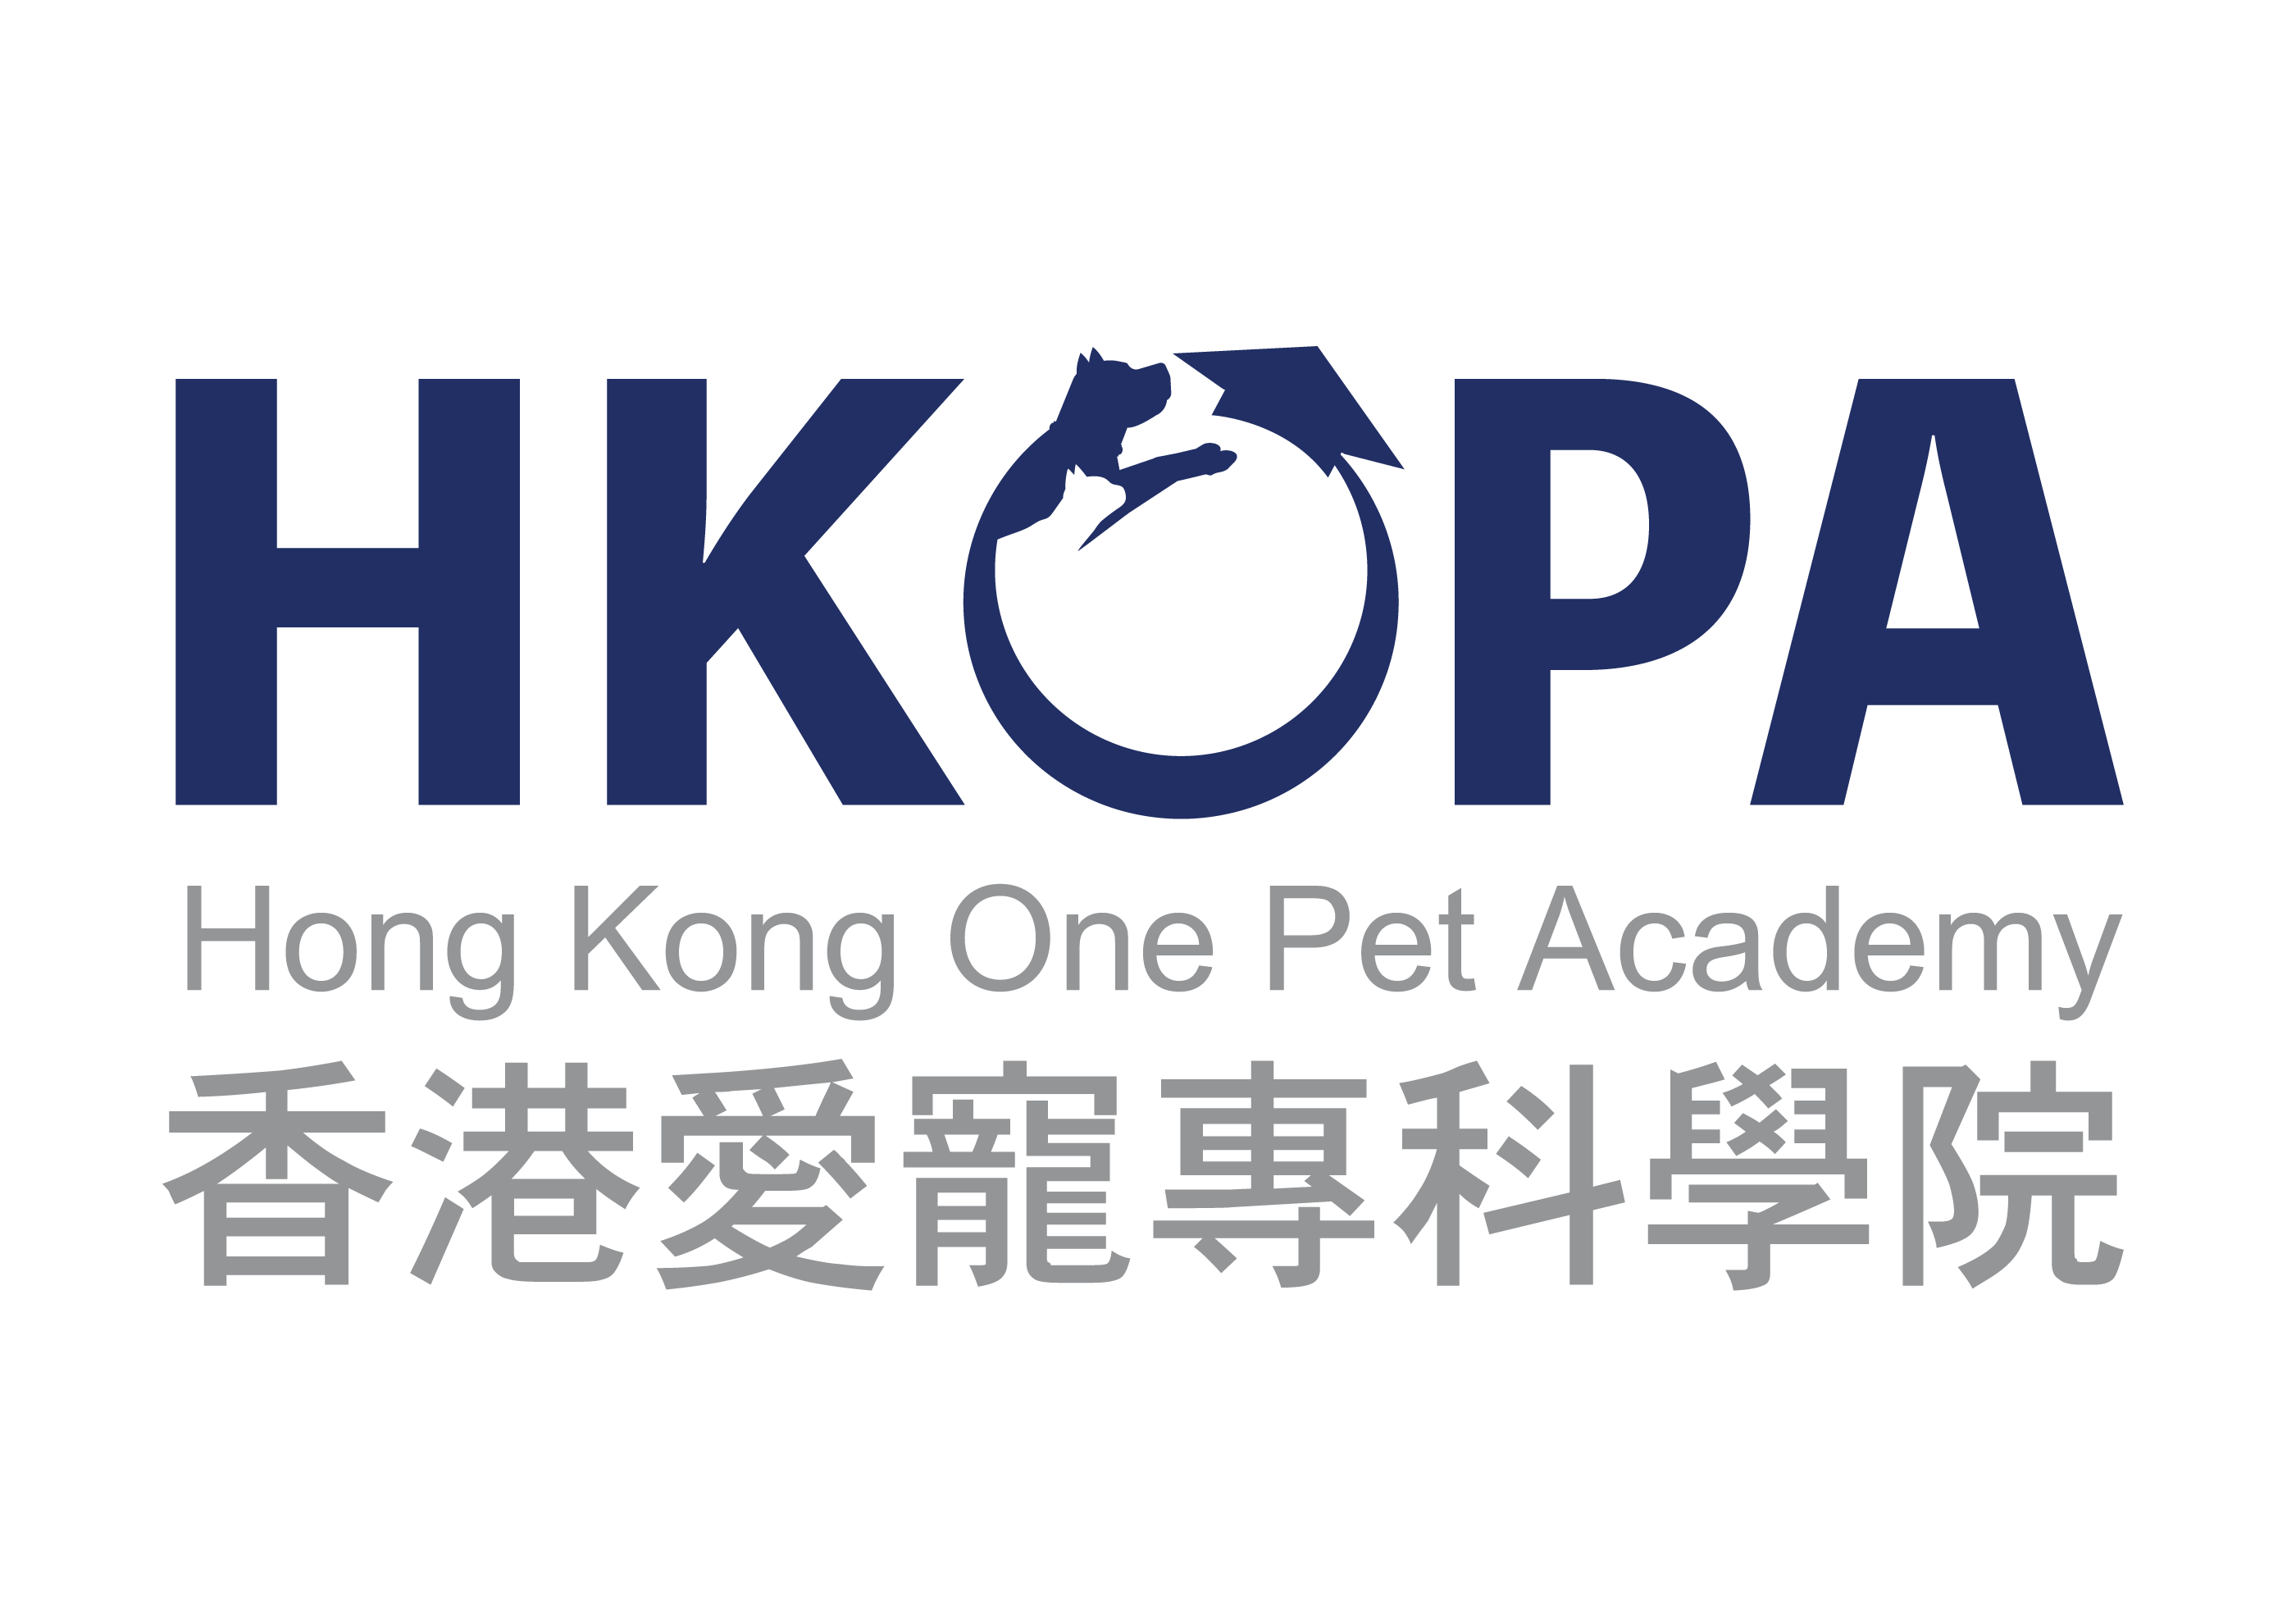 香港愛寵專科學院 Hong Kong One Pet Academy